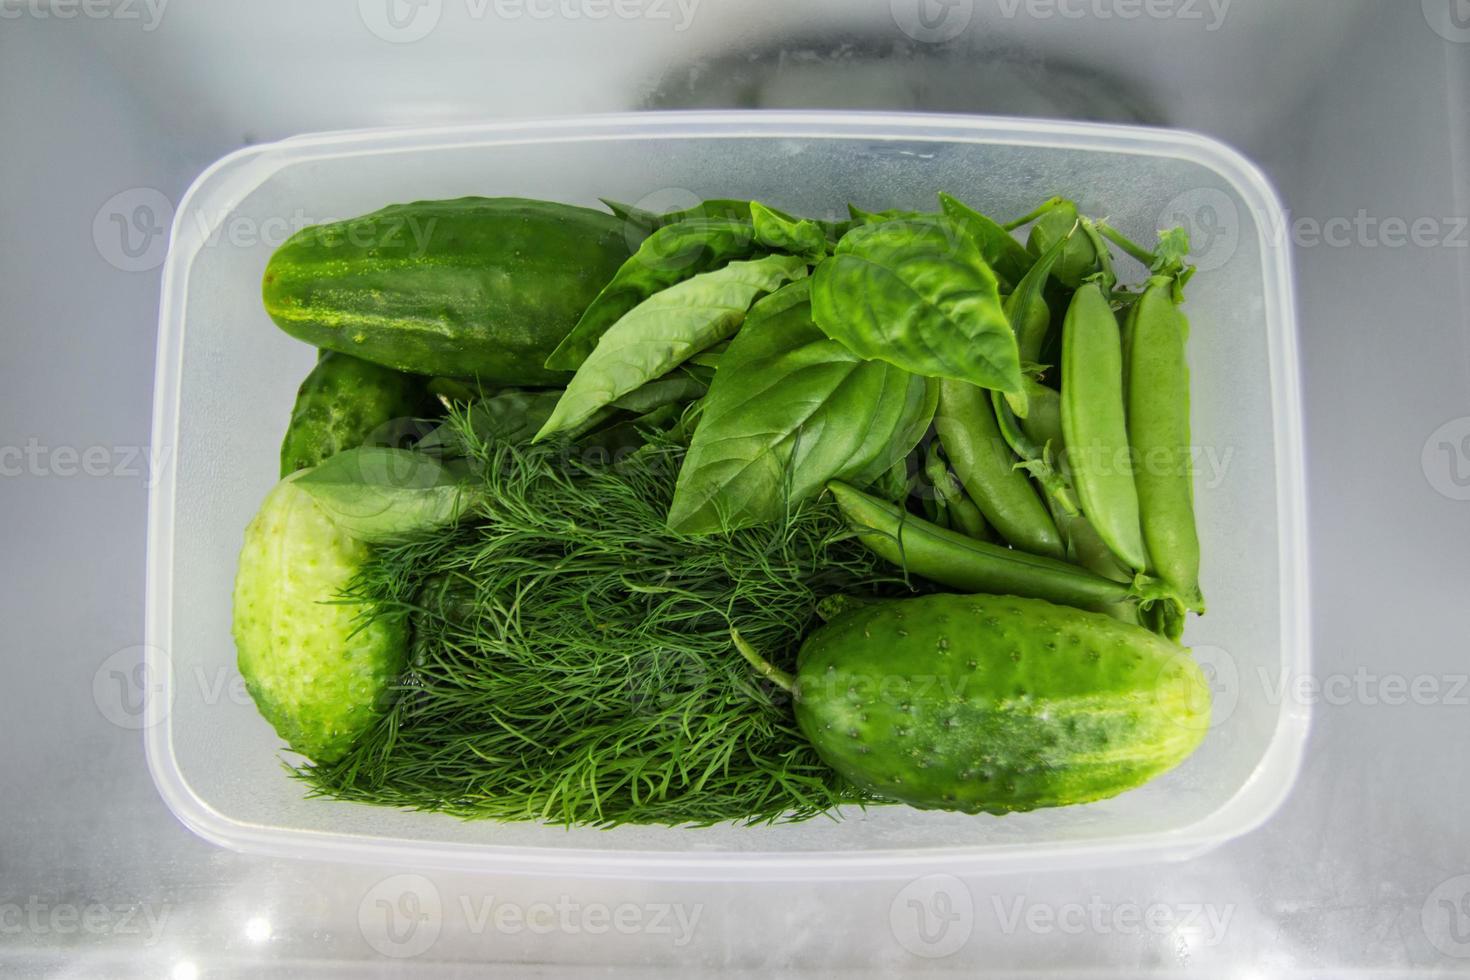 grünes gemüse - basilikum, dill, sauerampfer, erbsen, gurke - im plastikbehälter auf einem regal eines kühlschranks. foto